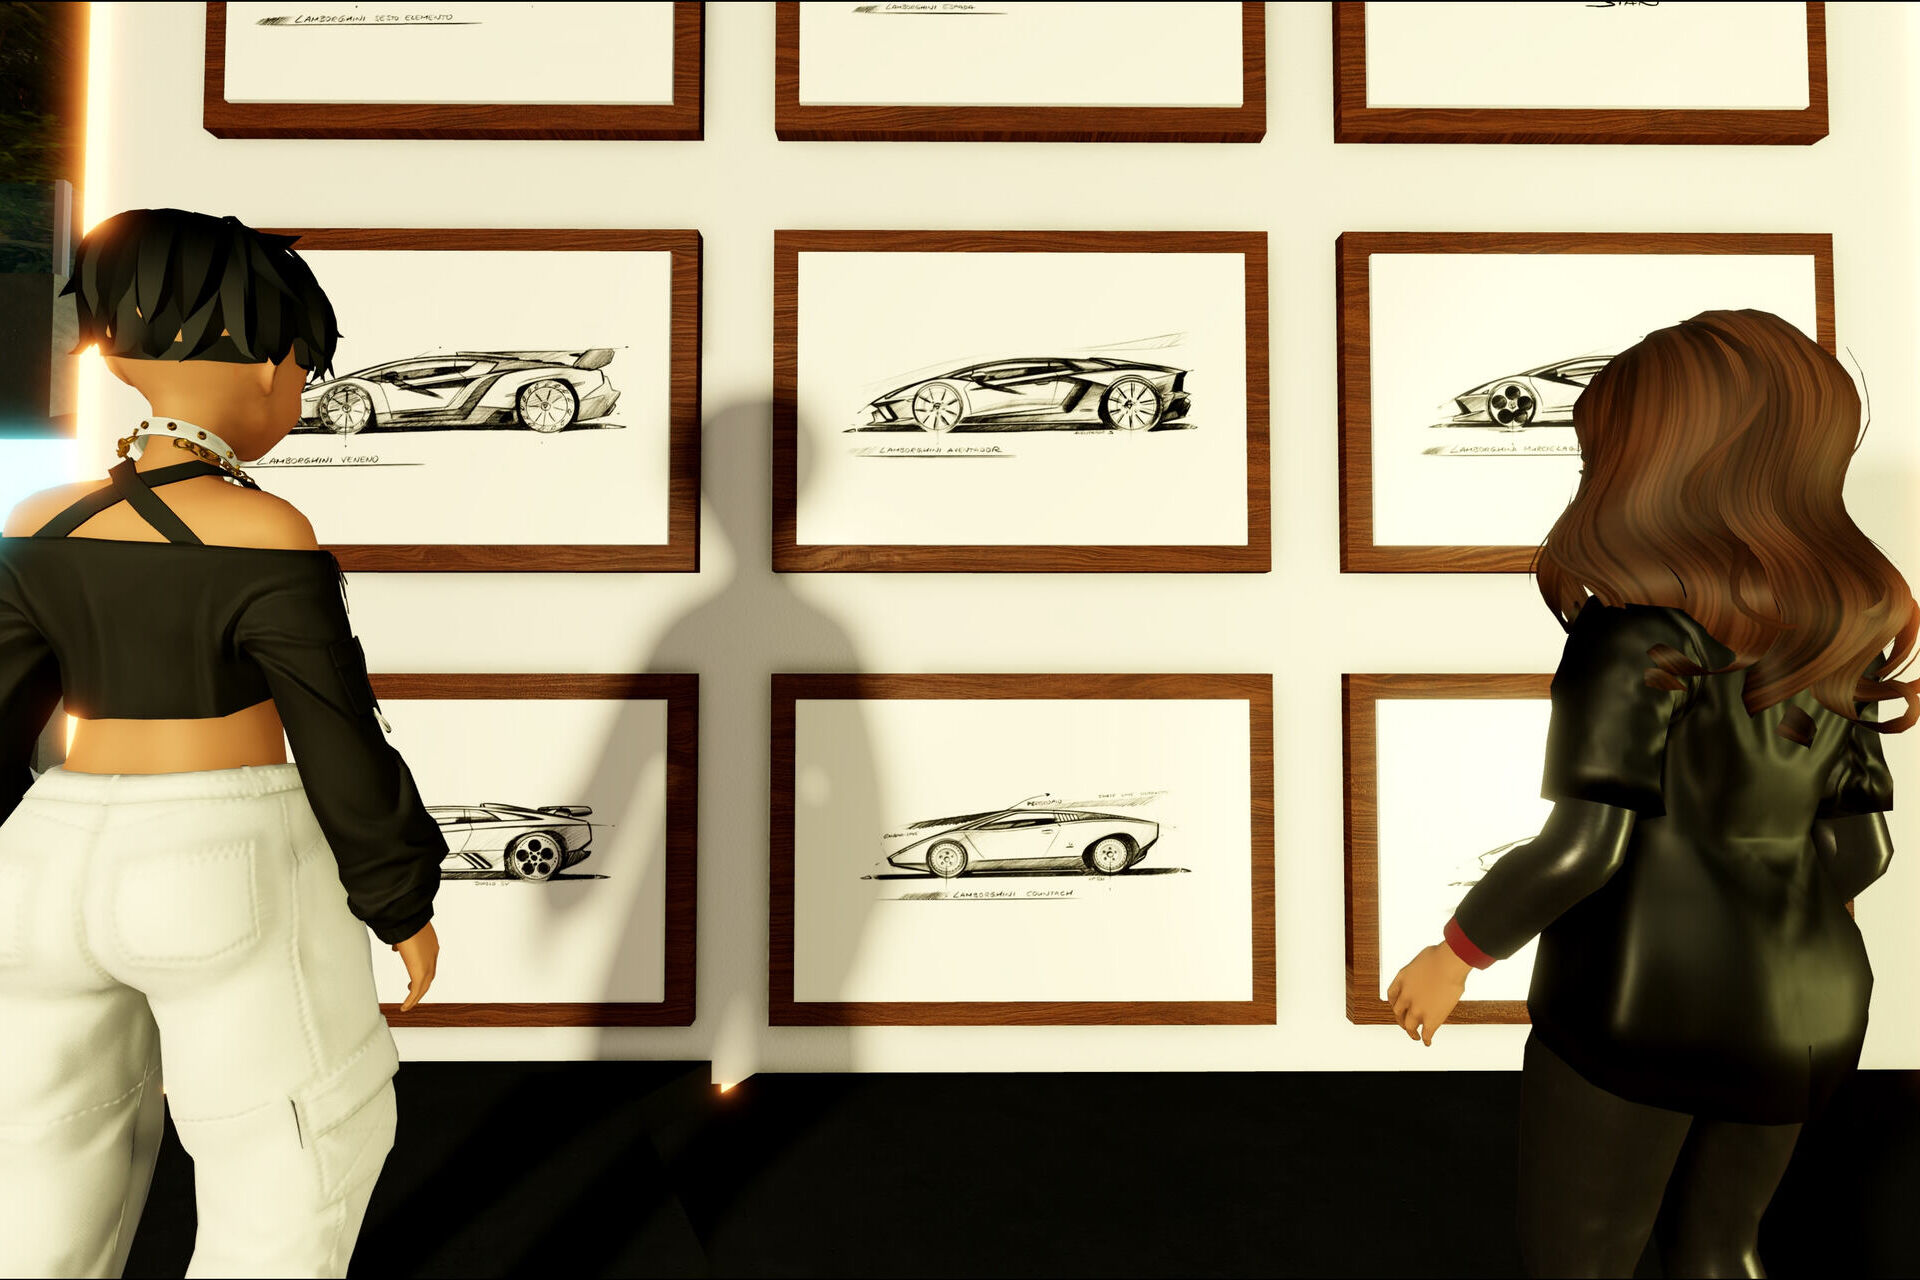 Lanzador: De elektrische supercar van Automobili Lamborghini staat op Roblox, een meeslepend 3D-platform